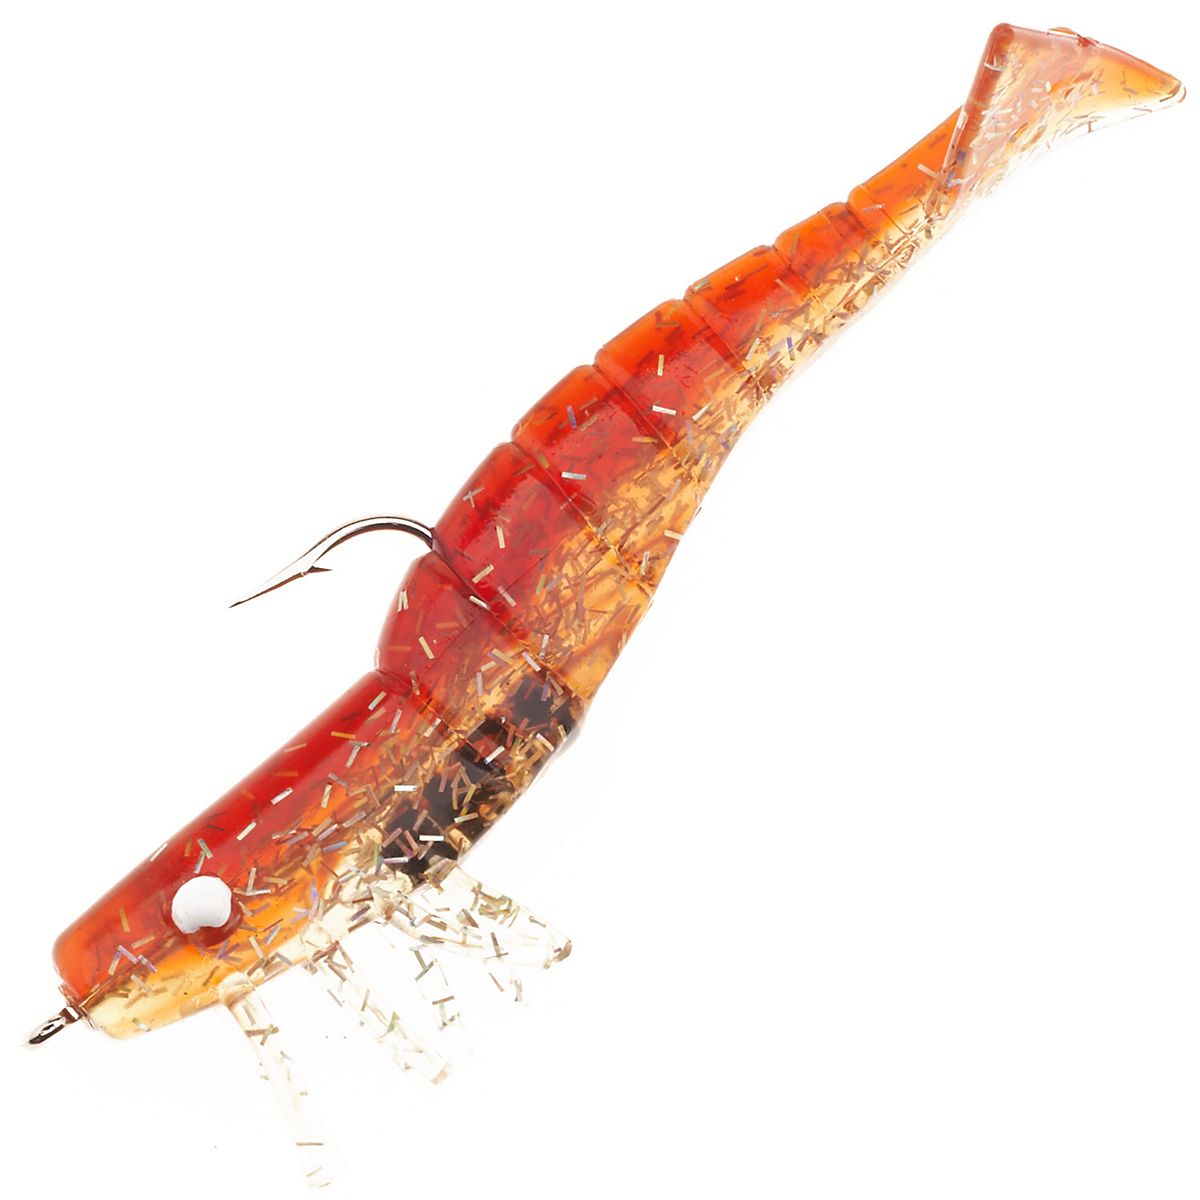 DOA Lures - Juvenile tarpon! DOA 2.75” shrimp great bait to get